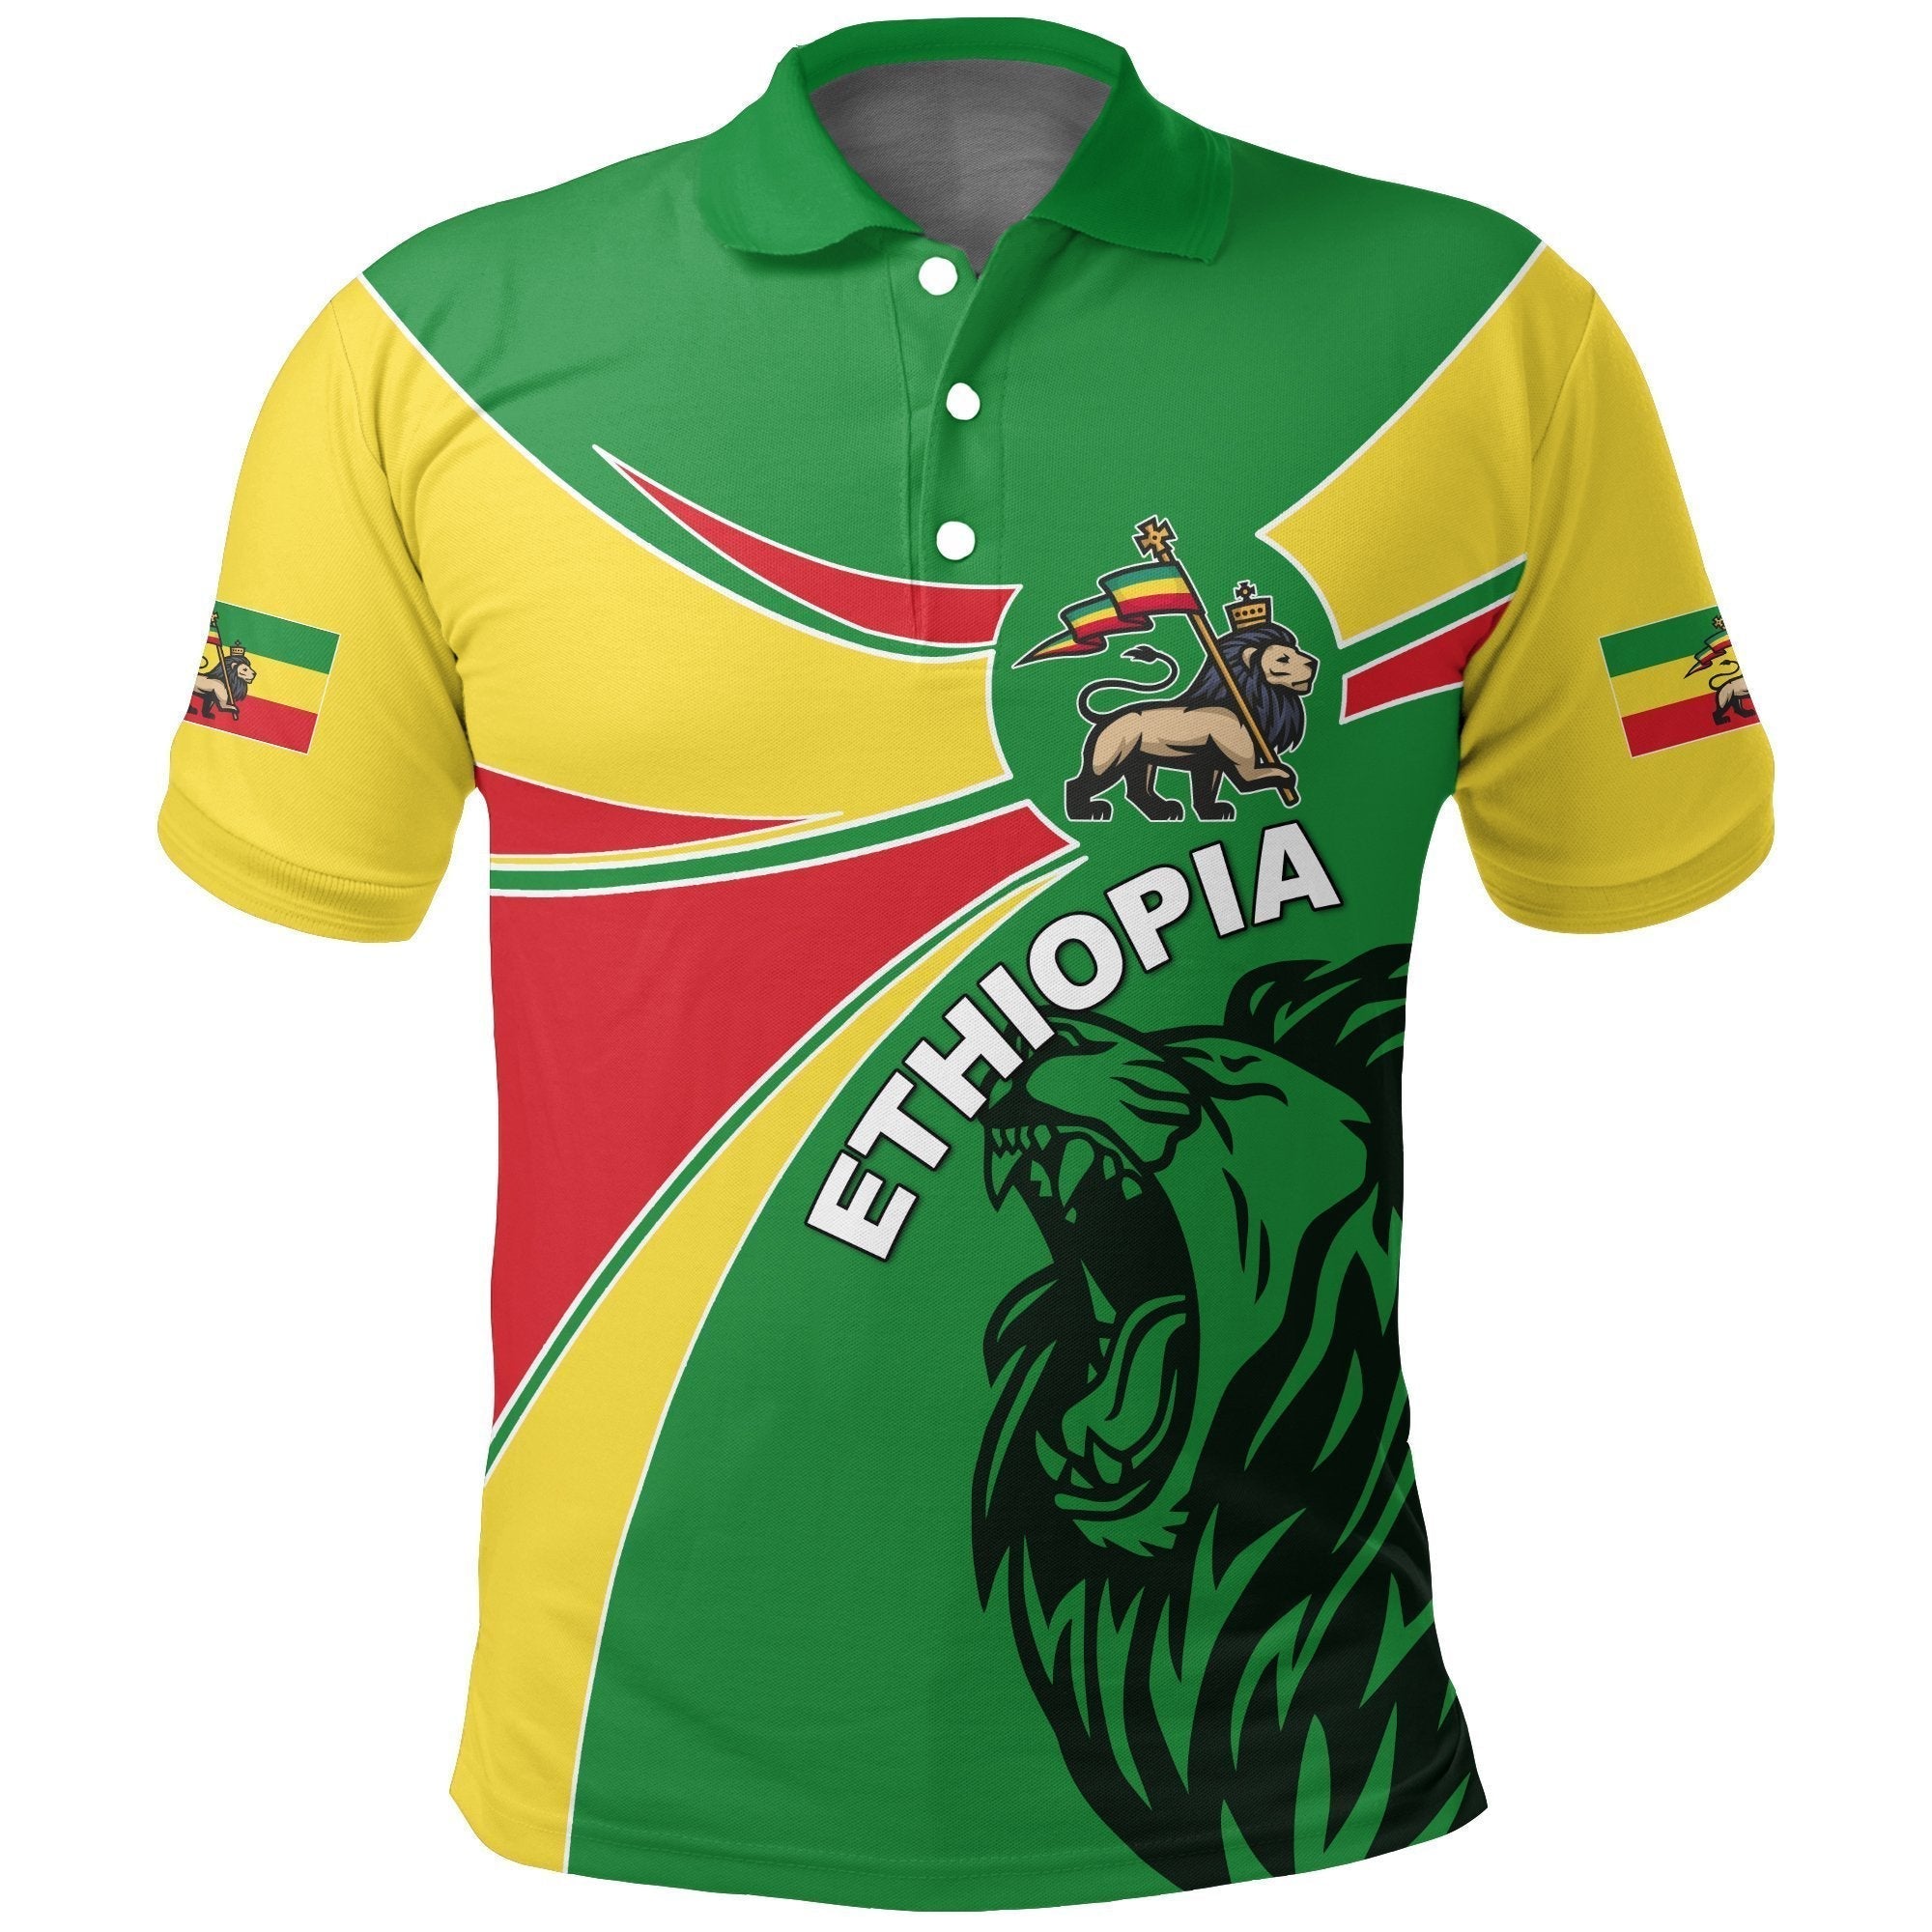 ethiopia-polo-shirt-ethiopia-round-coat-of-arms-lion